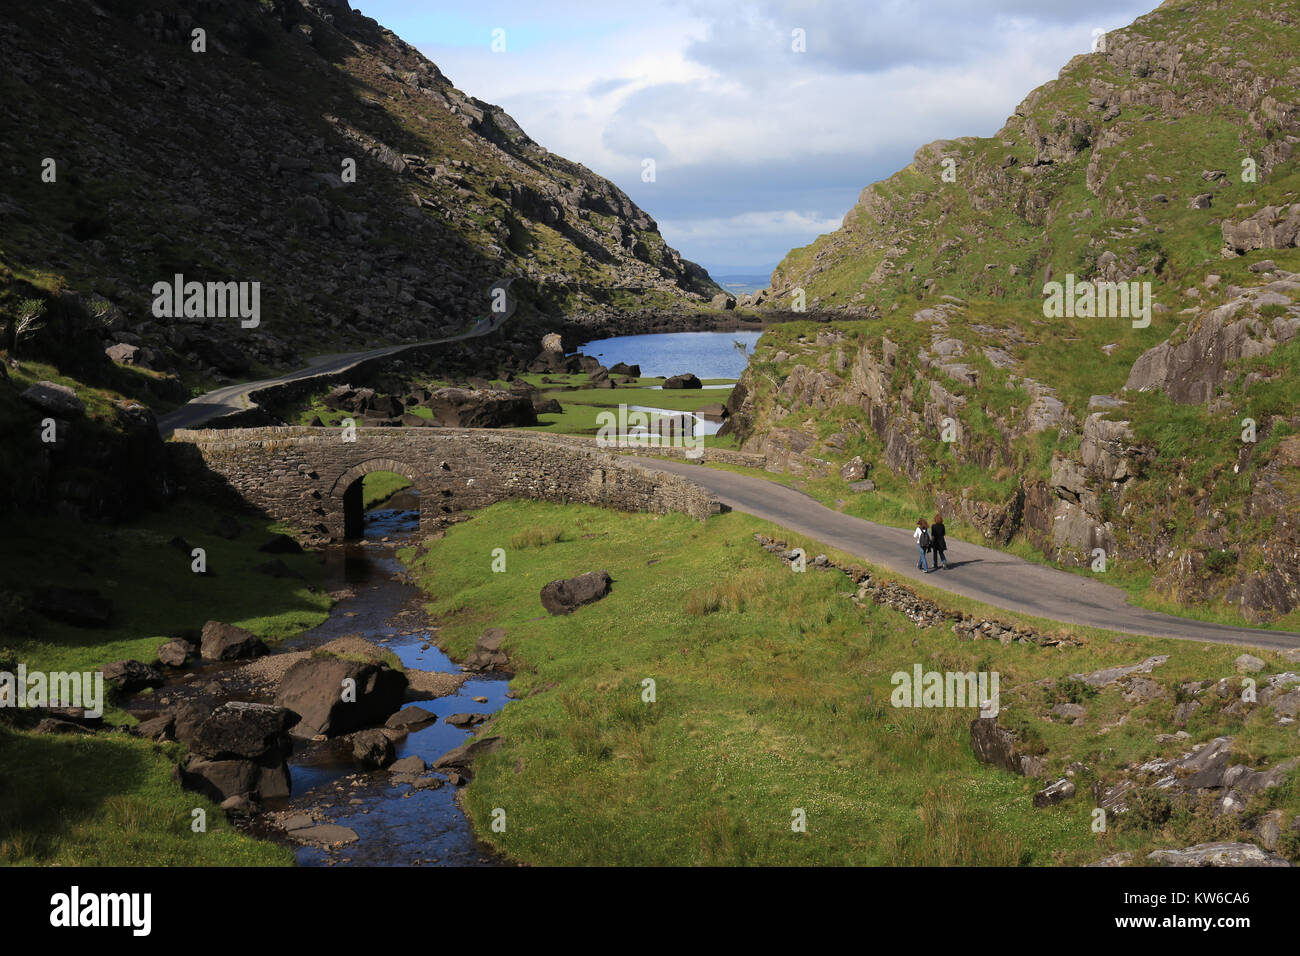 Wandteppich der Felder und Berge, die die irische Landschaft machen  Stockfotografie - Alamy